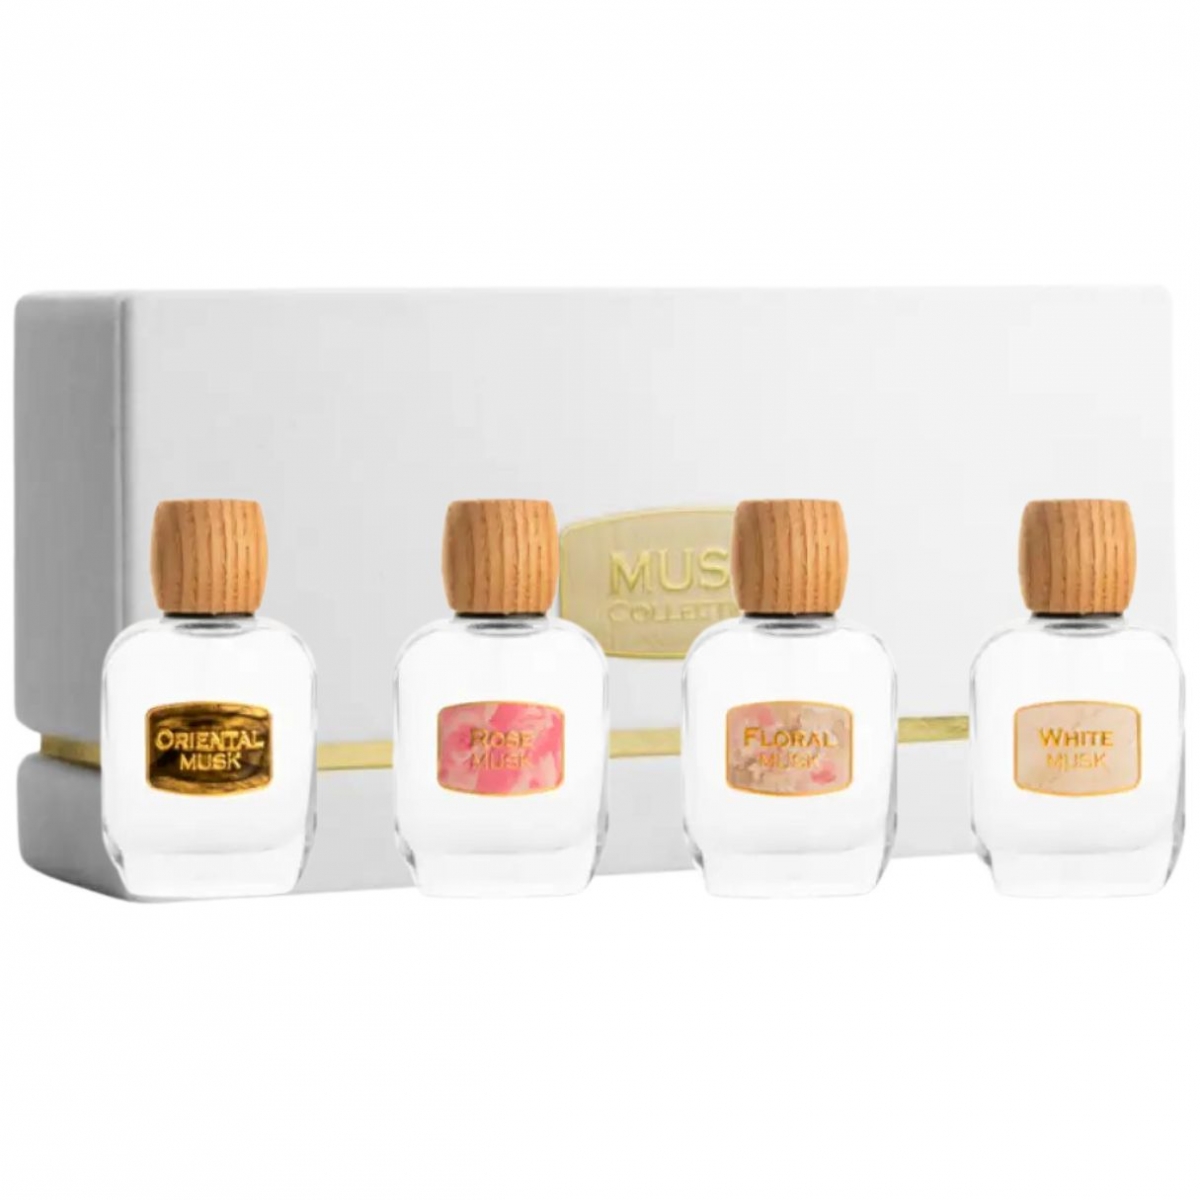 Musk Collection Junaid Perfumes Perfumes, Unisex Perfumes, Arada Perfumes